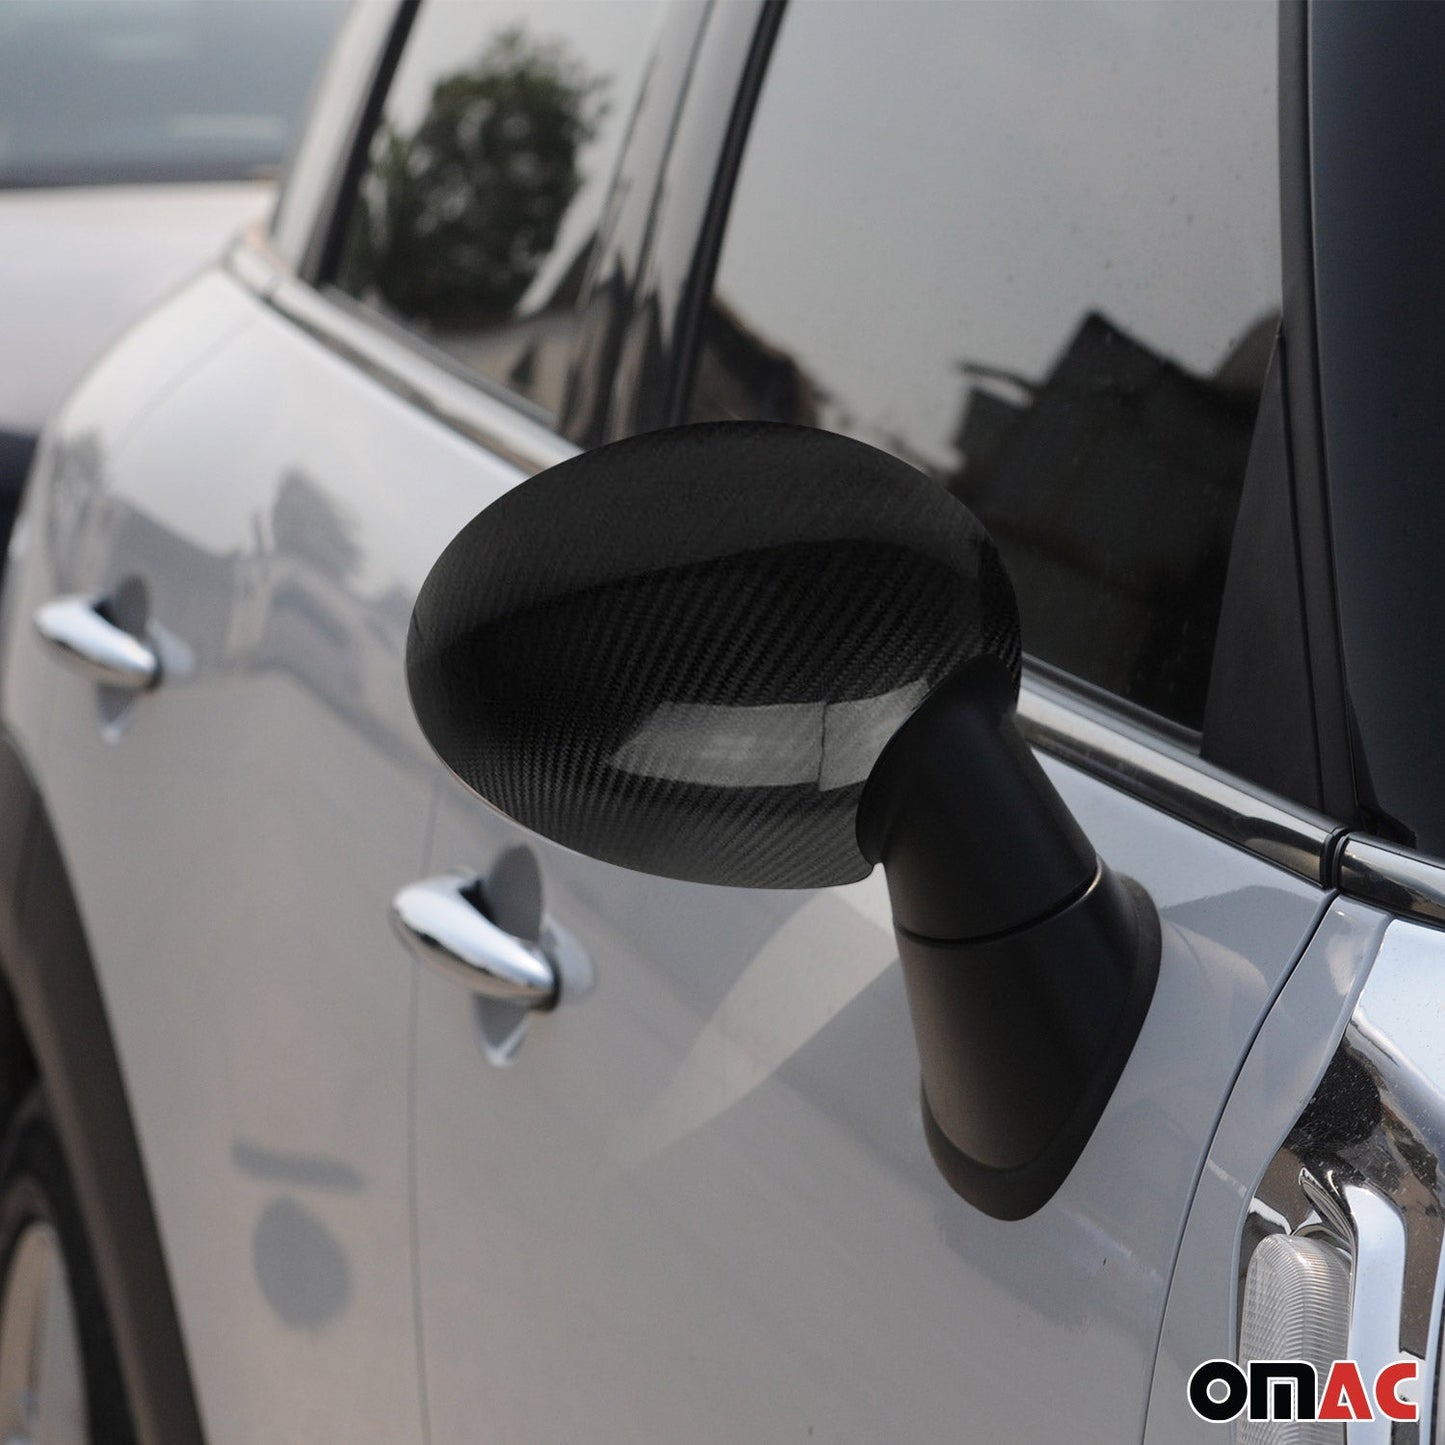 OMAC Side Mirror Cover Caps Fits Mini Cooper F55 F56 2014-2022 Carbon Fiber Black 2x 4811111C